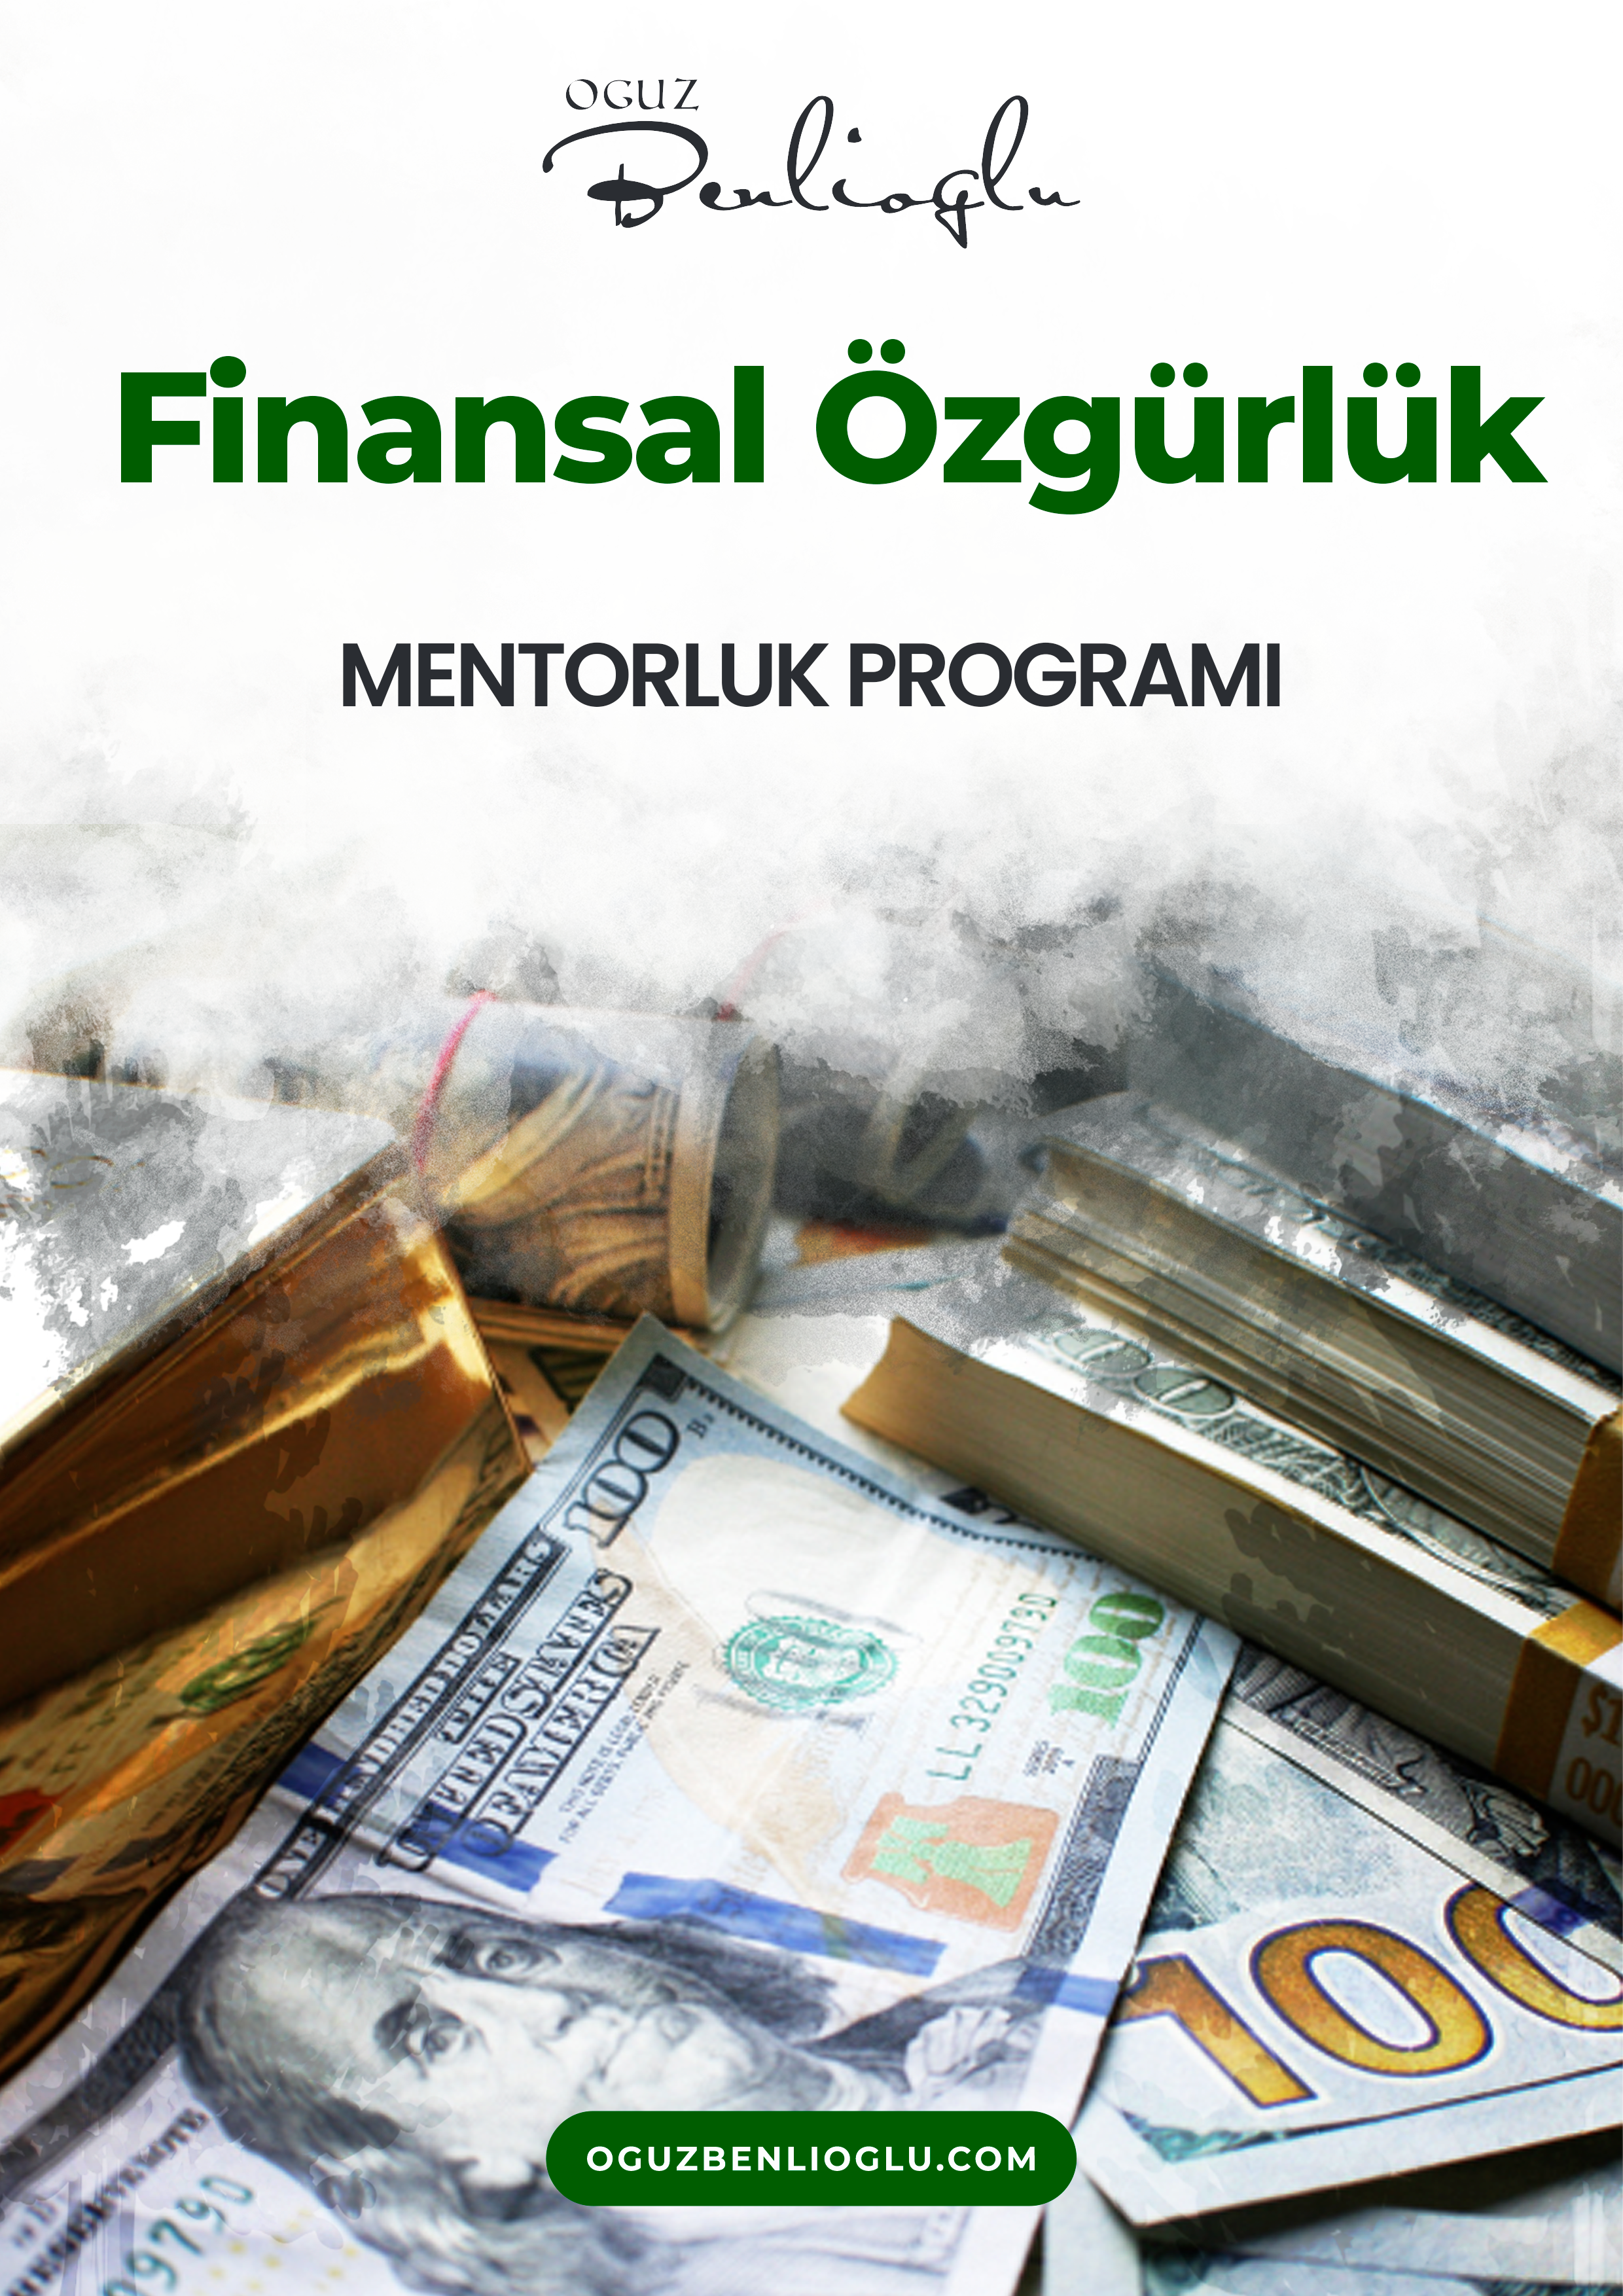 Finansal Özgürlük - Finans Flix